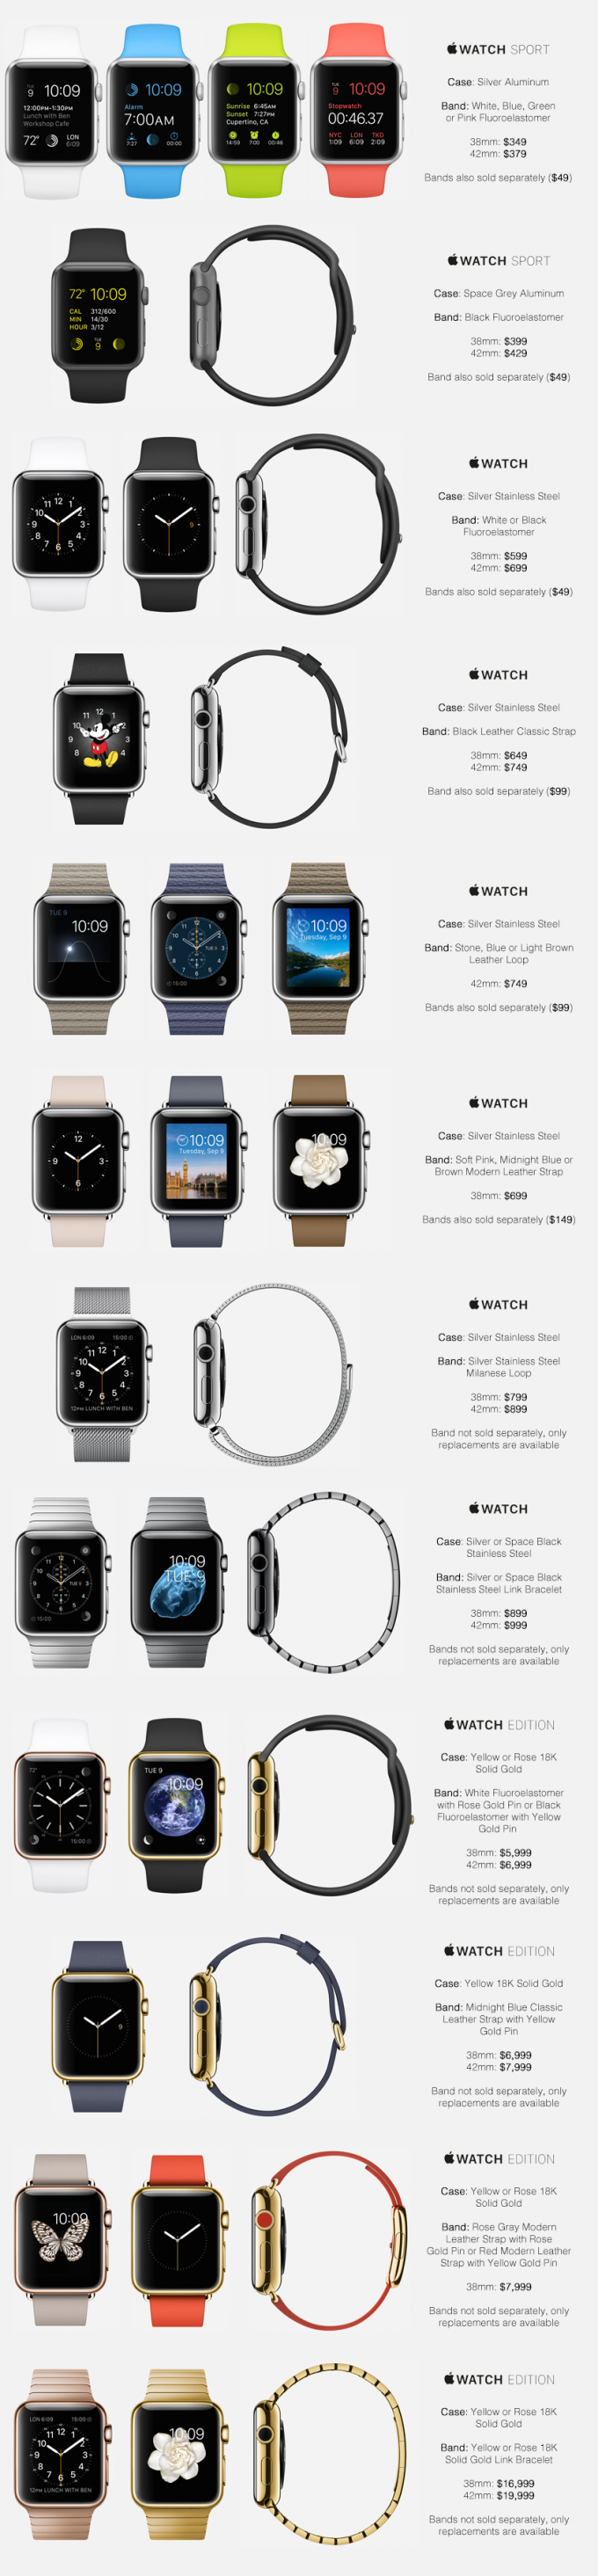 Предполагаемые цены на все модели Apple Watch (2 фото)